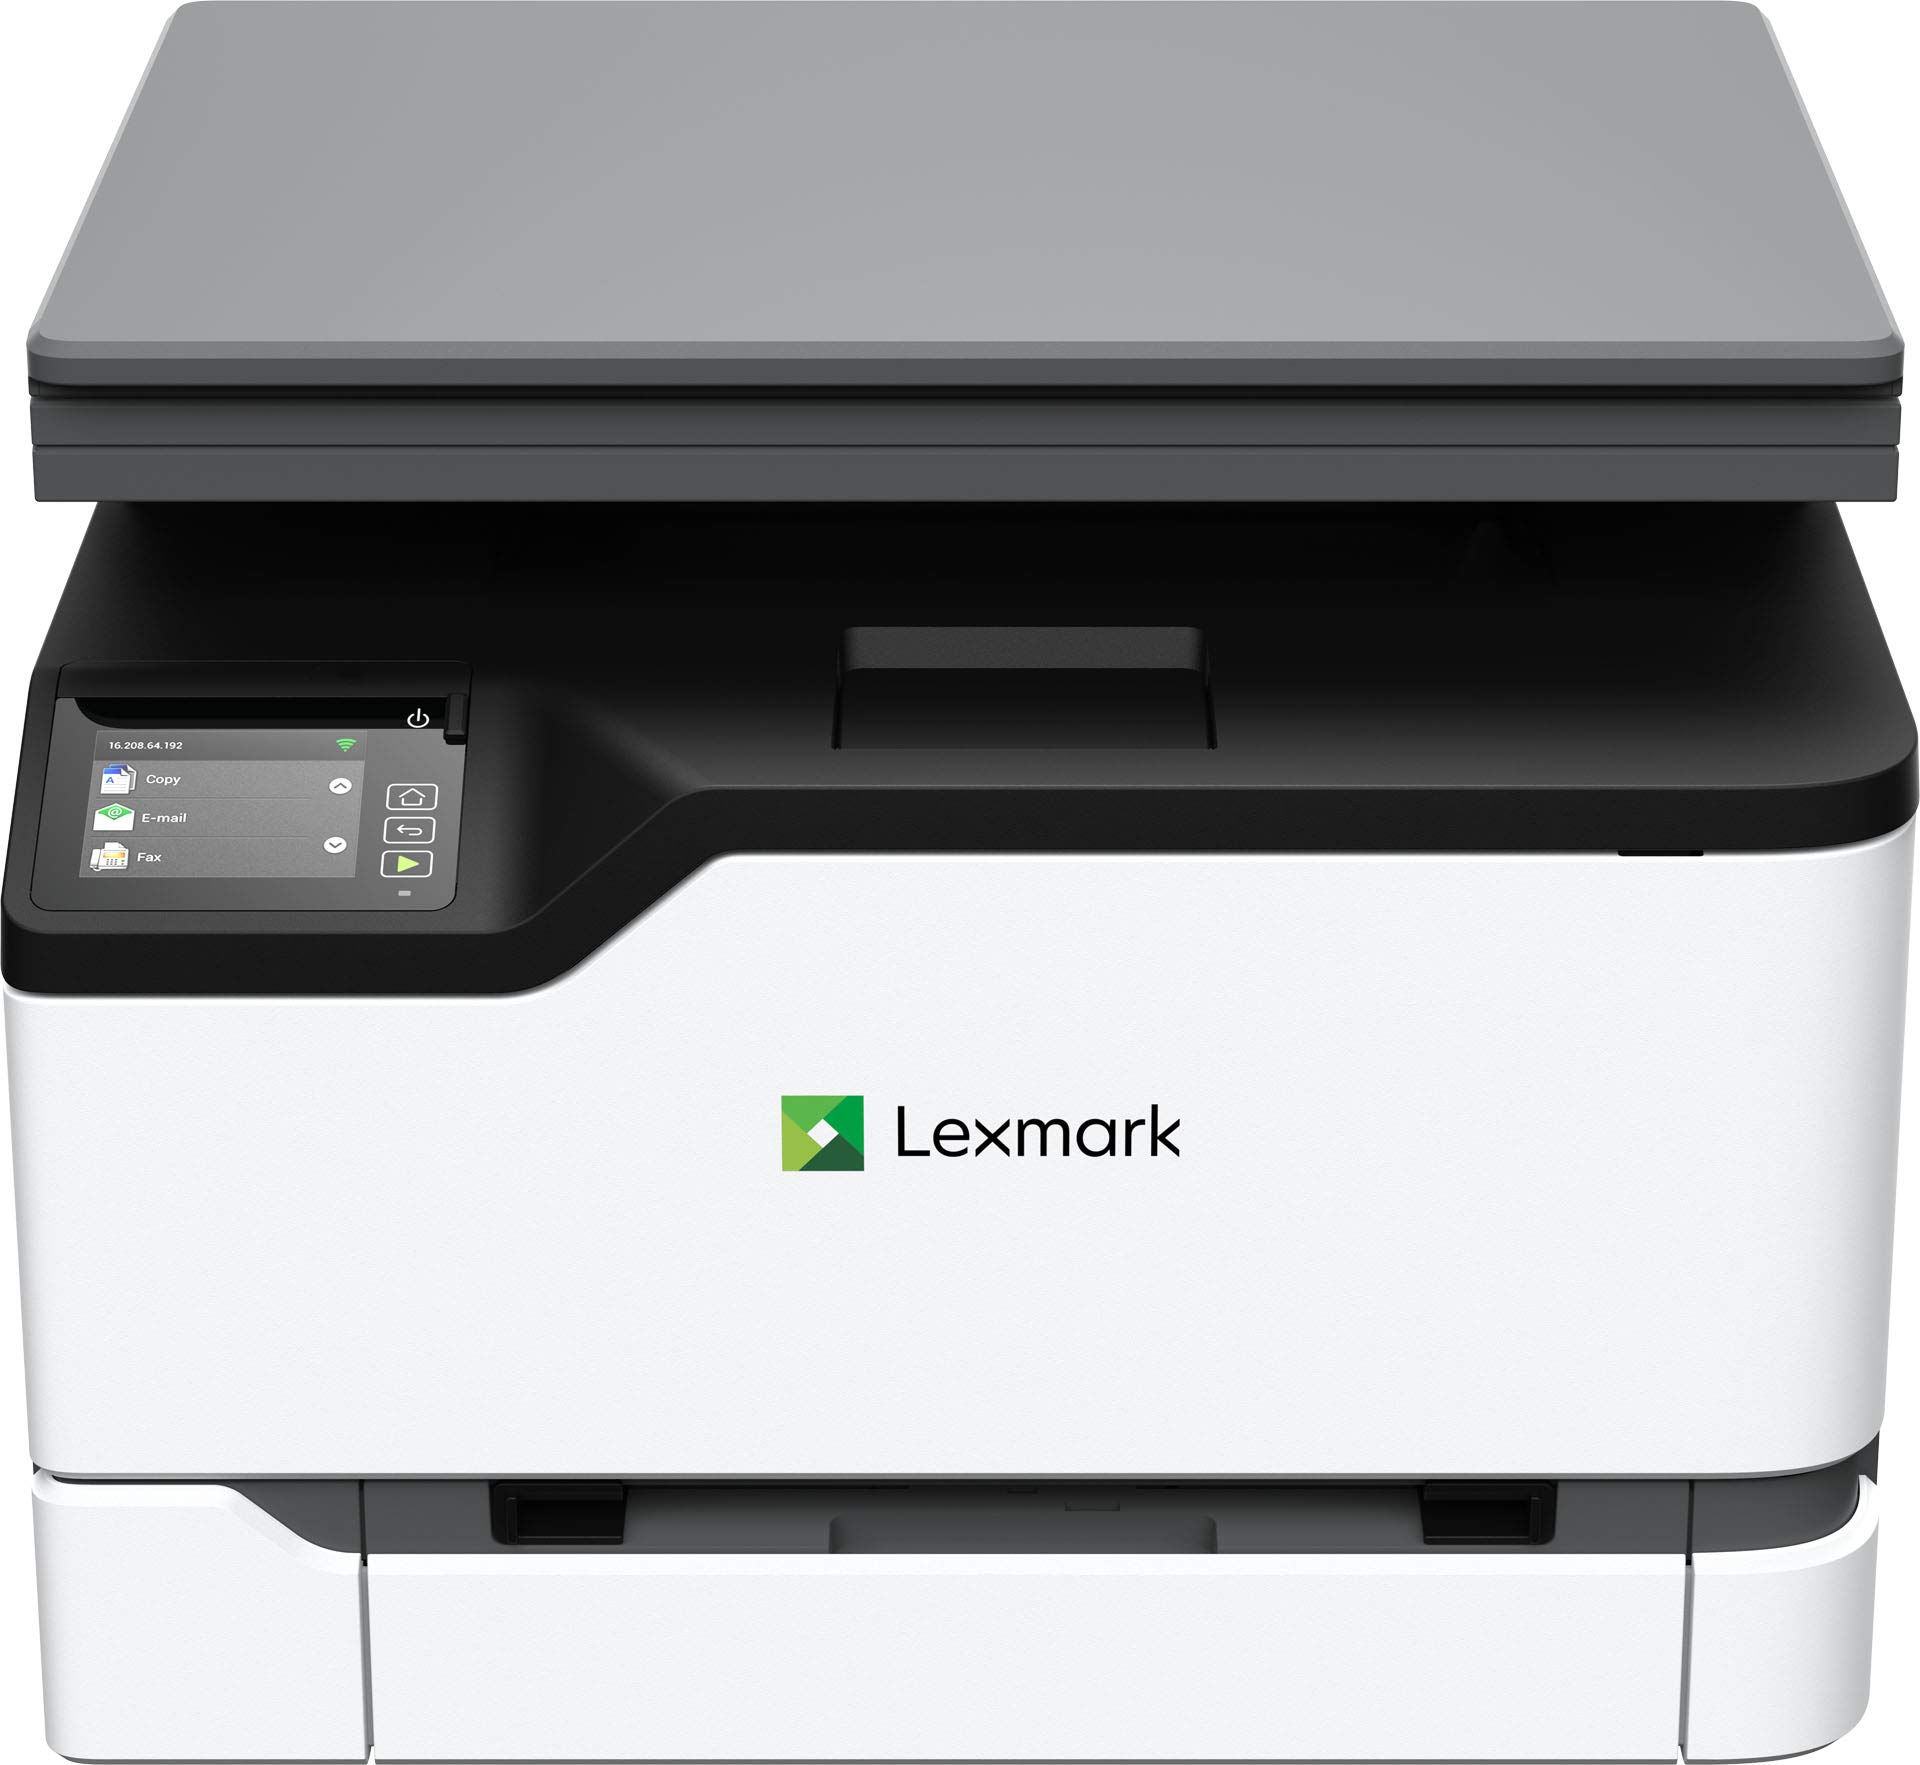 Lexmark MC3224dwe 彩色多功能激光打印机，具有打印、复印、扫描和无线功能，具有全谱安全性的双面...